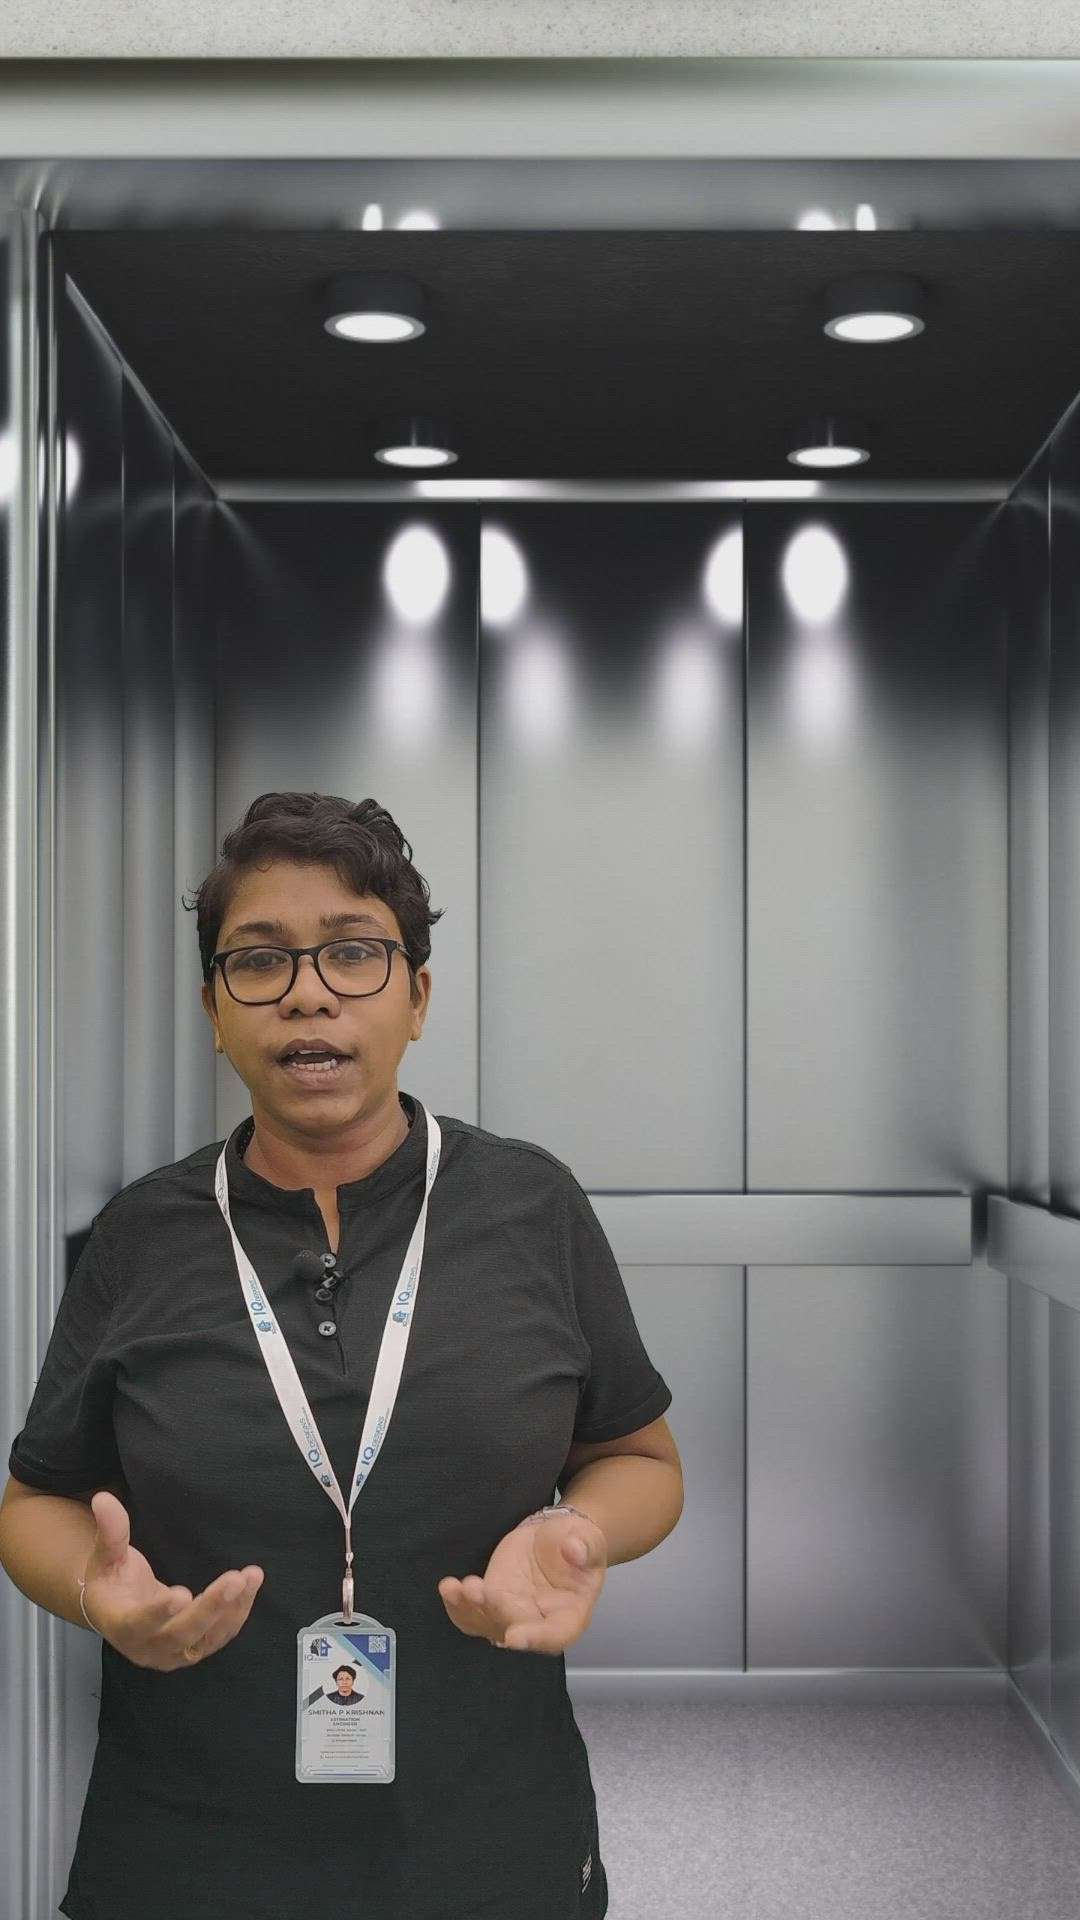 #lifts #elevators  #information  #CivilEngineer  #smithataurus